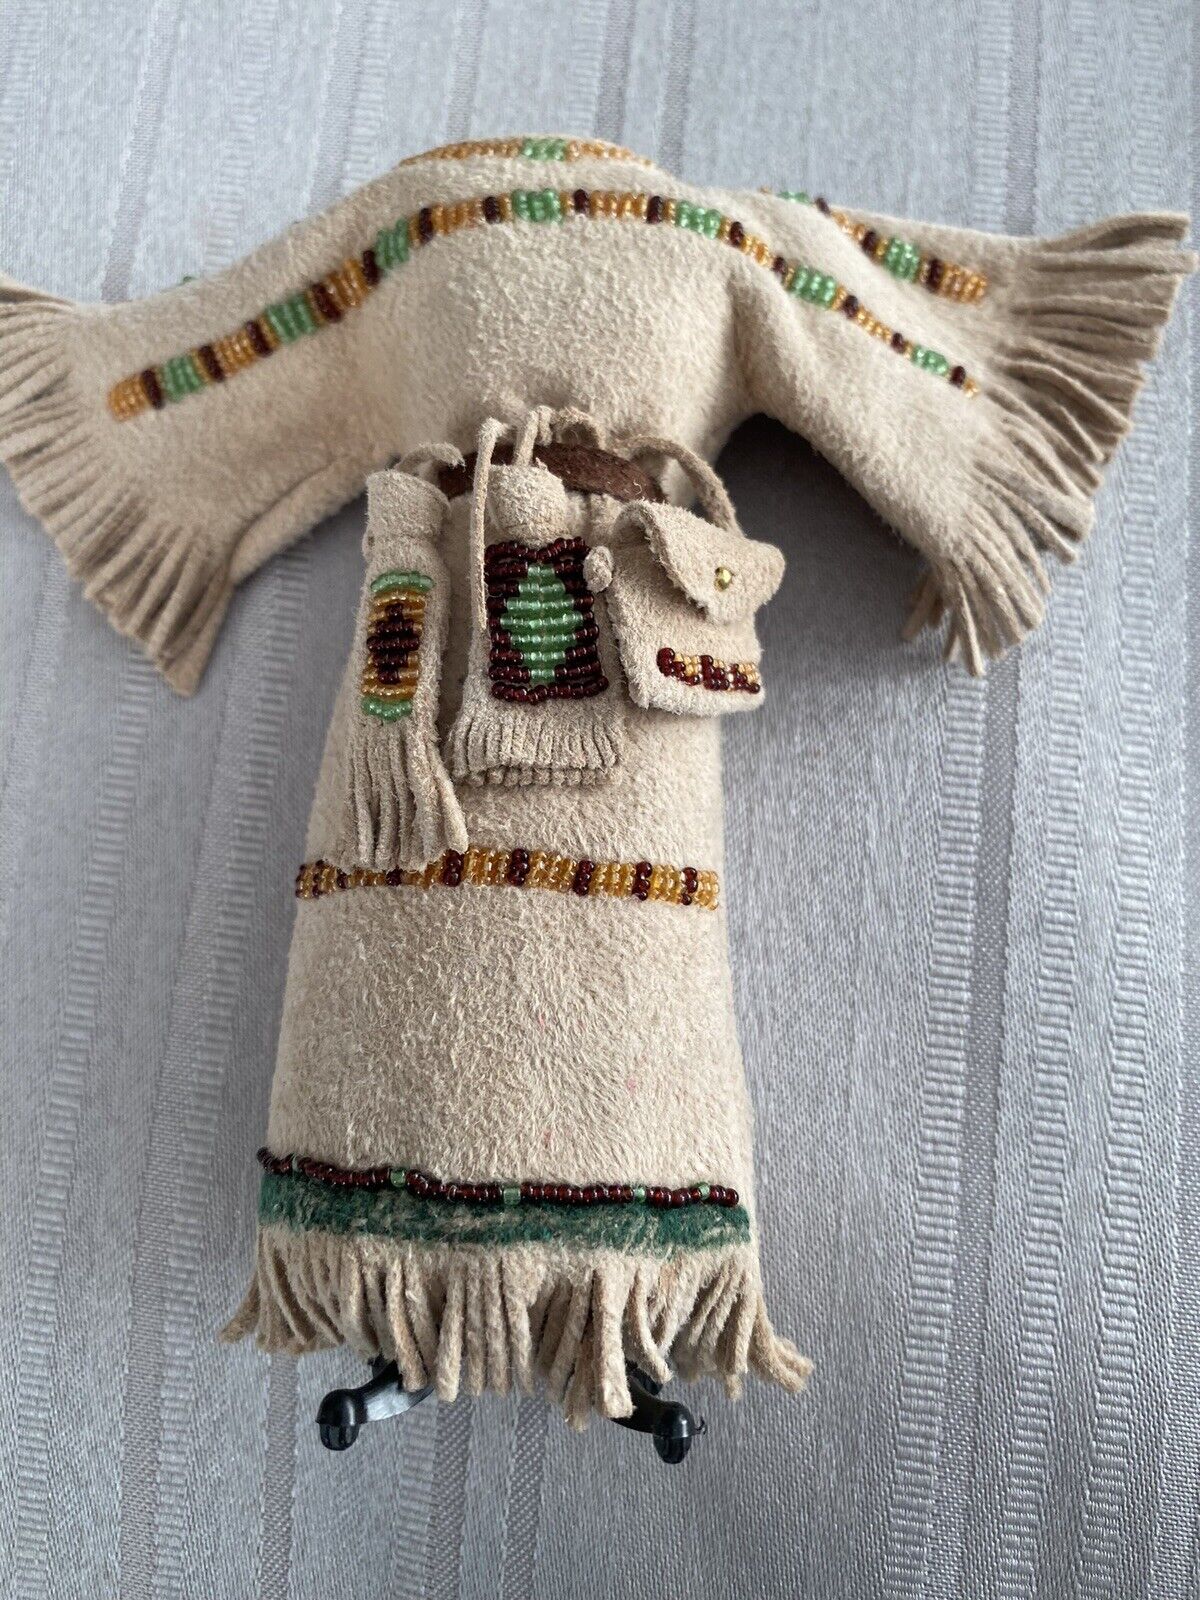 Miniature Handmade Beaded Deerskin Cheyenne Dress by Tu Moonwalker (D39)$